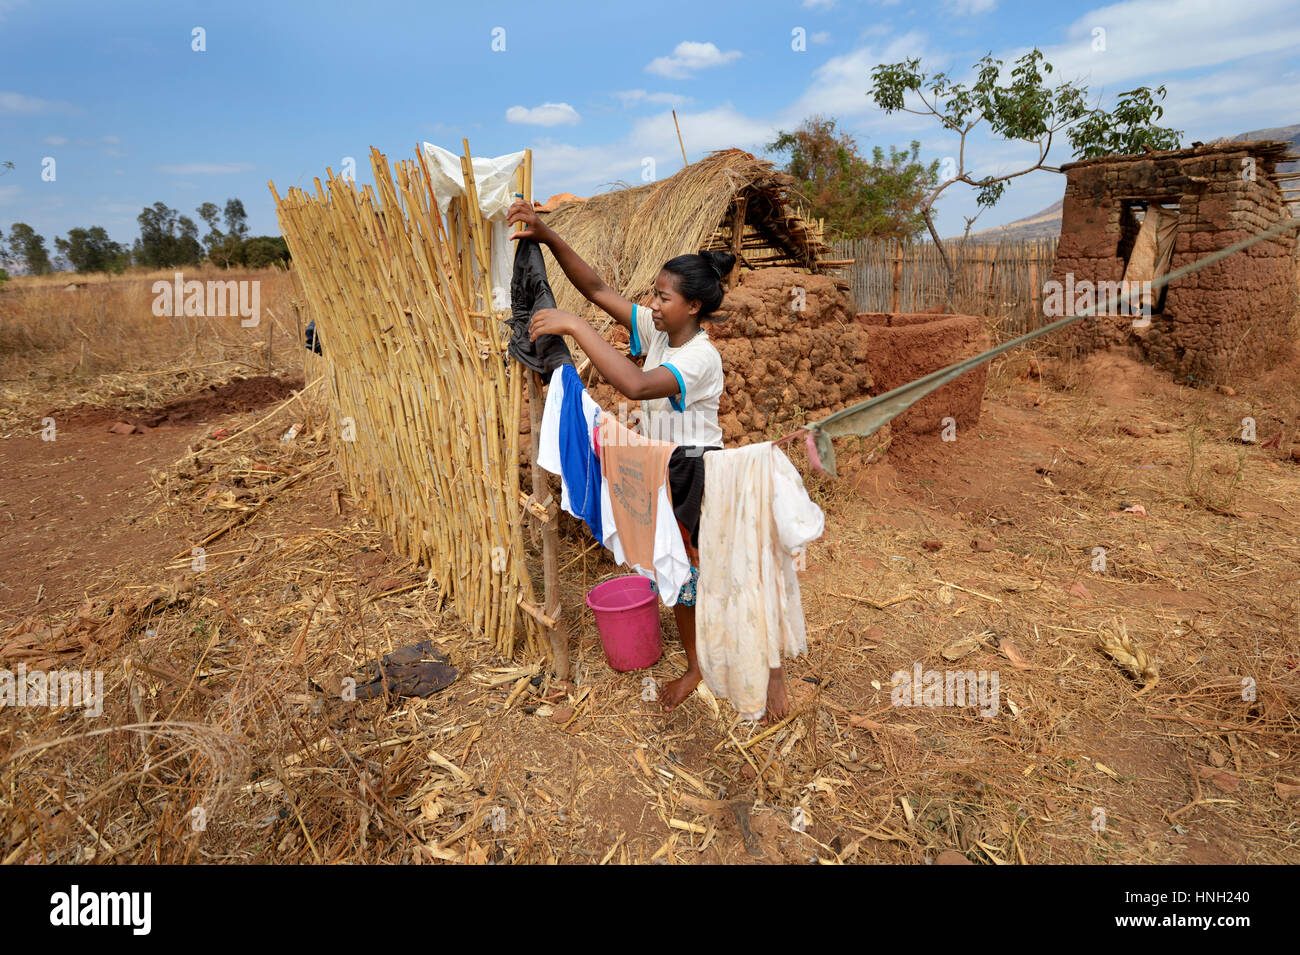 La donna si blocca i panni bagnati su una linea di abbigliamento, Analakely village, Tanambao comune, distretto di Tsiroanomandidy, Bongolava regione Foto Stock